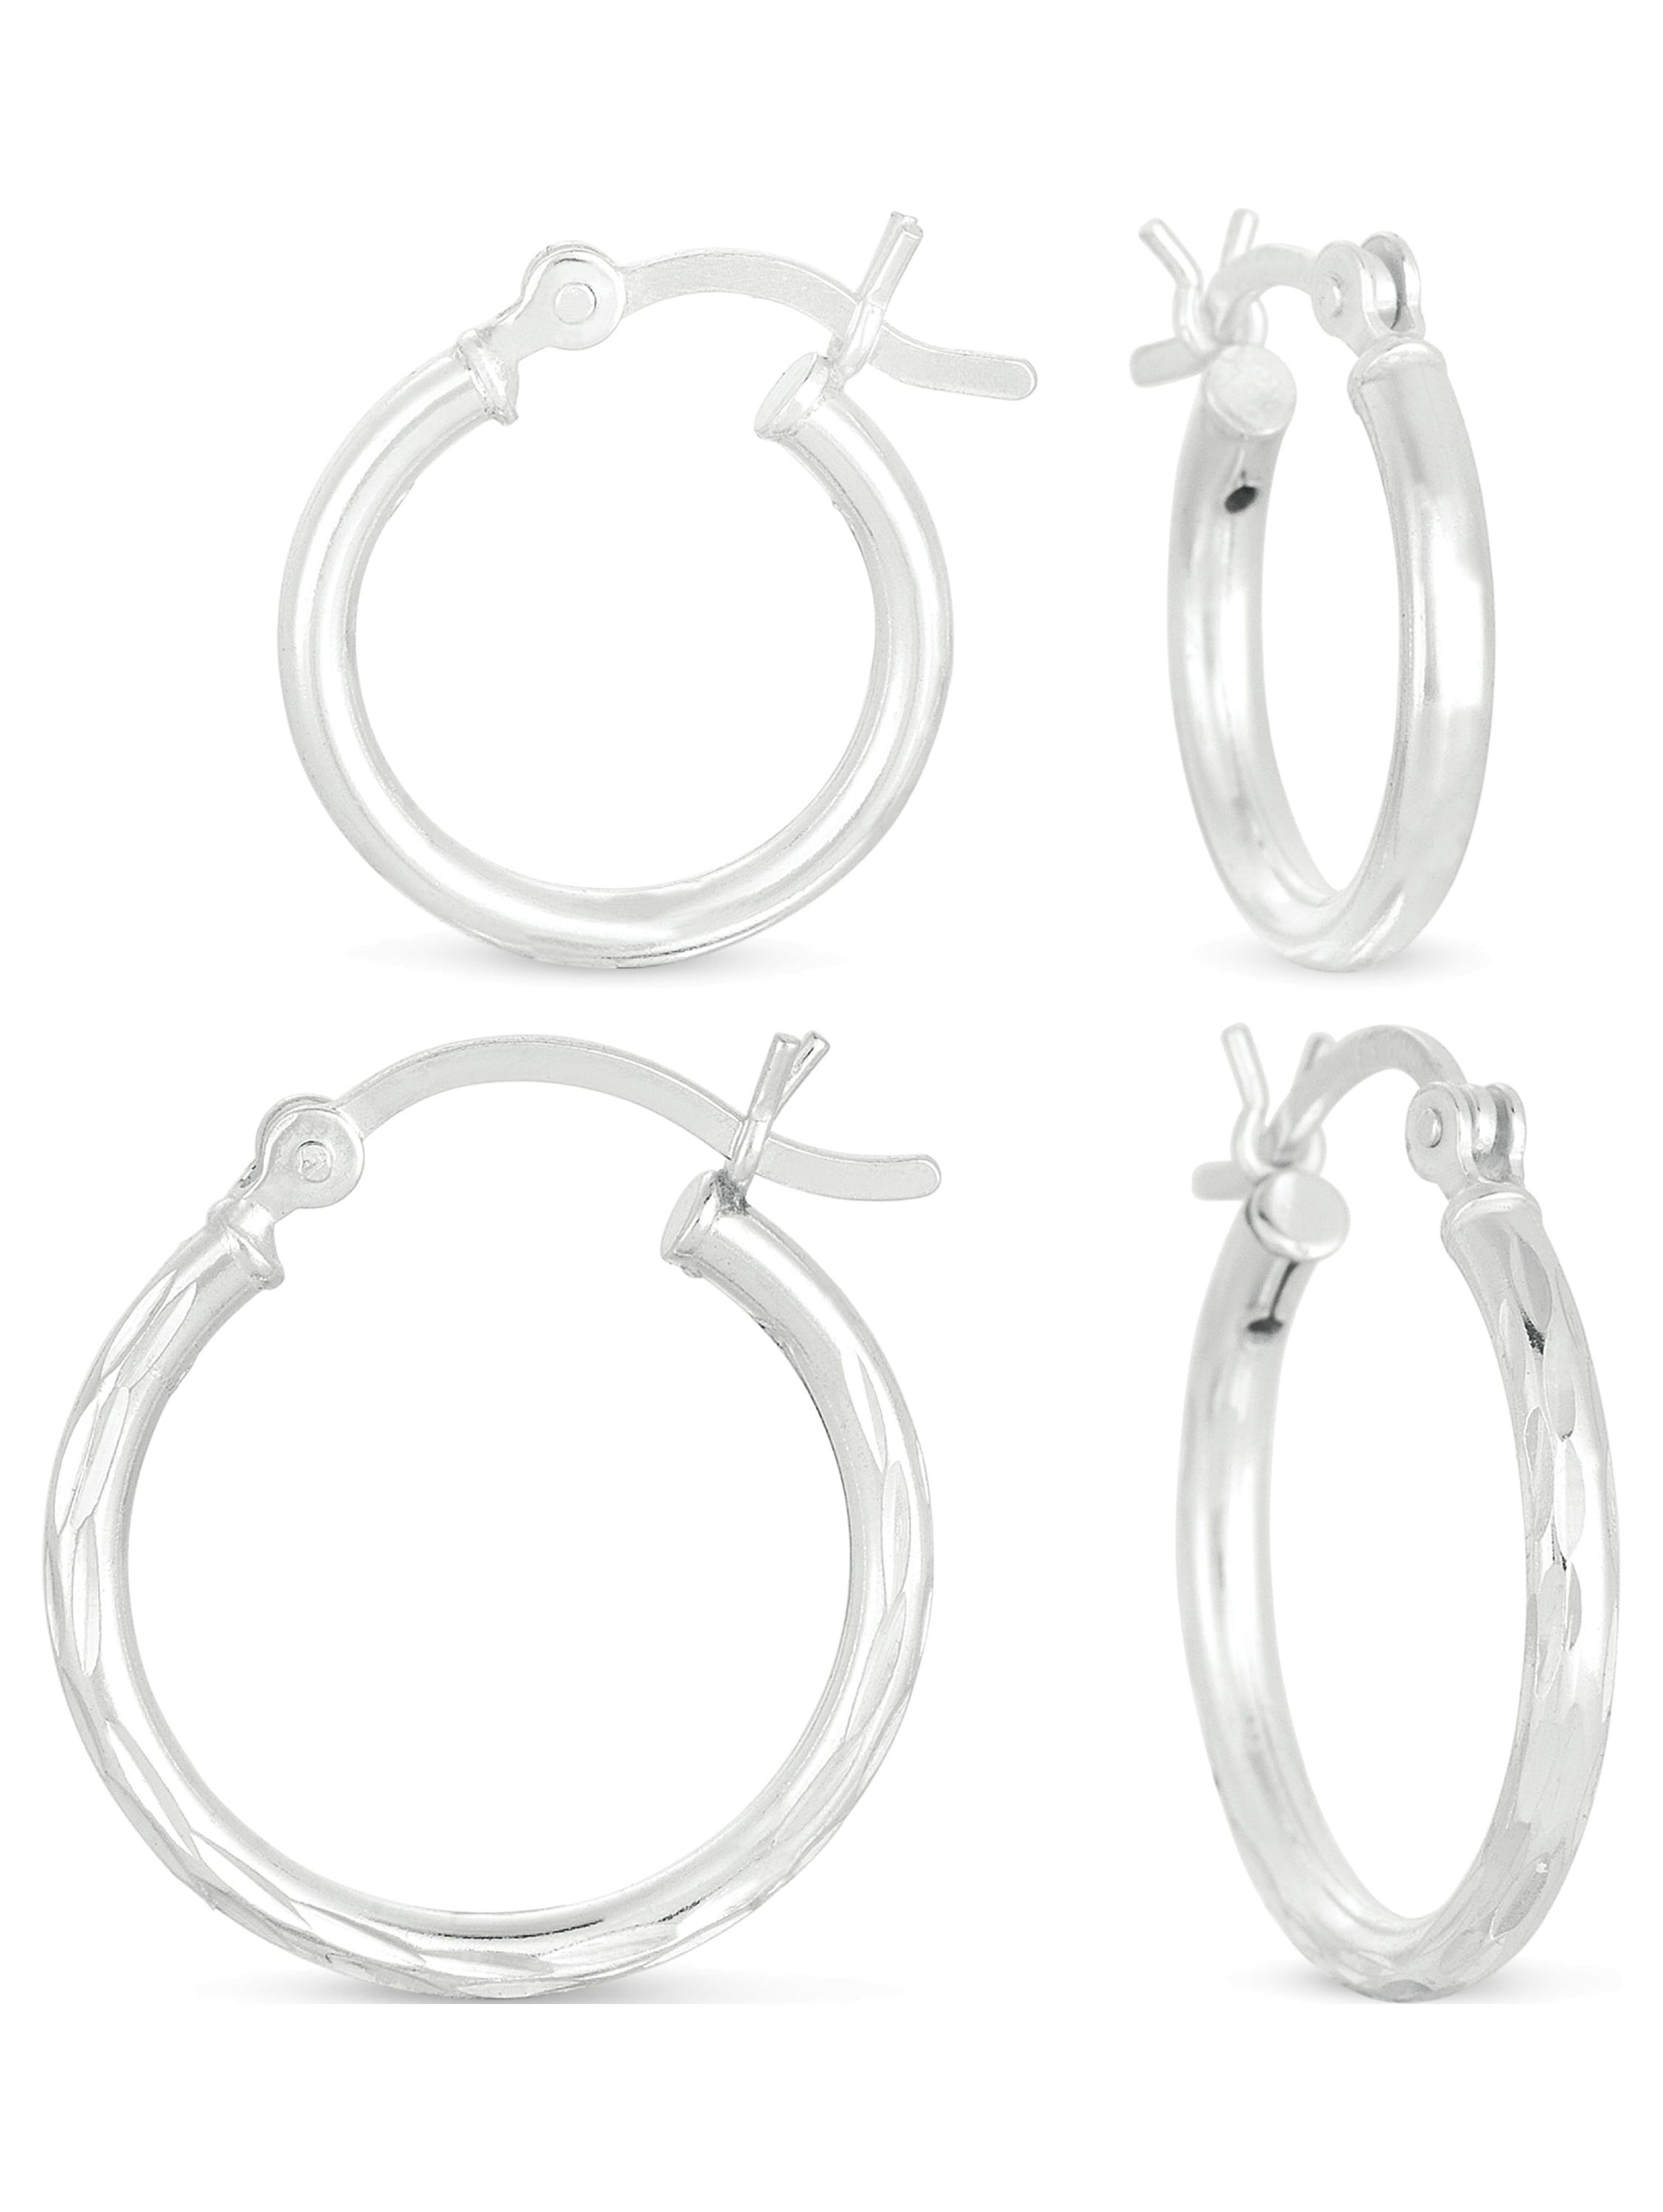 Sterling Silver Hoop Earrings Set - image 1 of 4